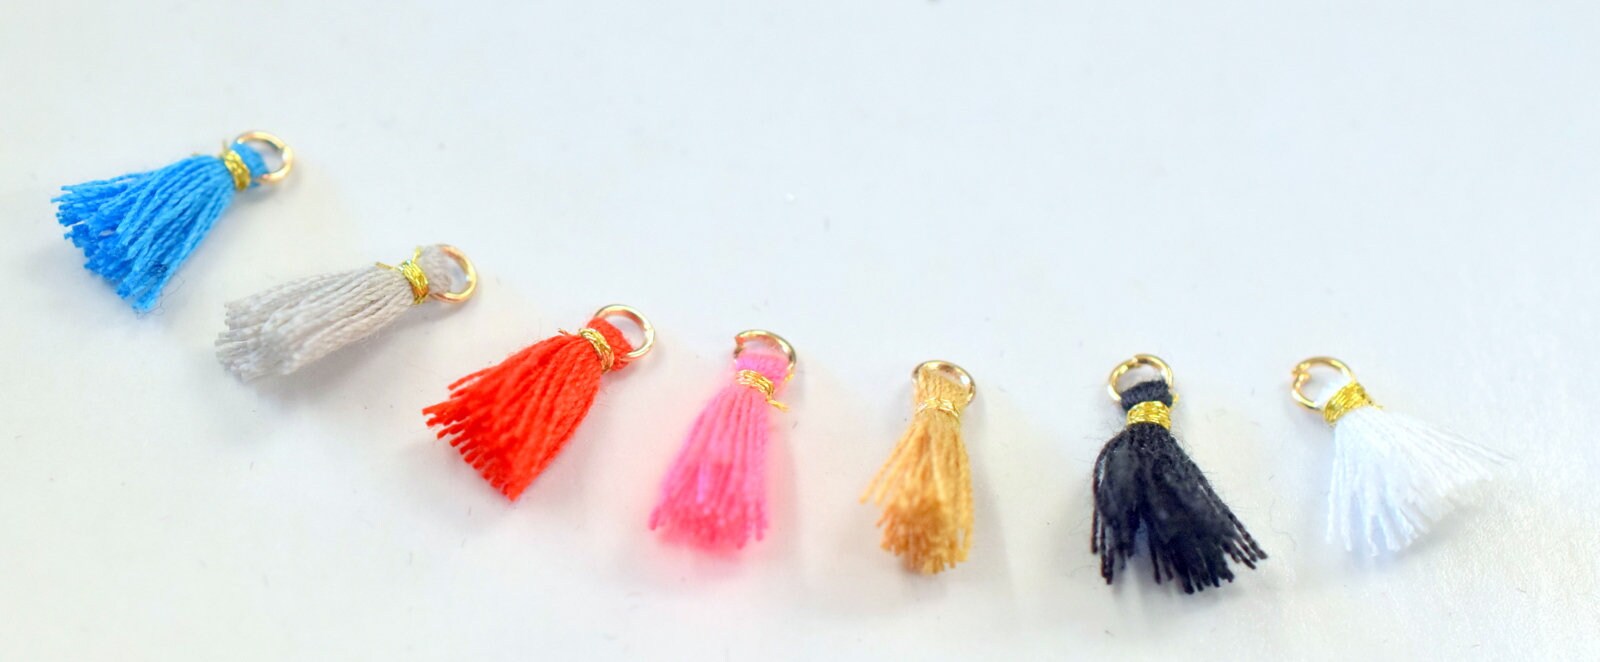 12mm Tassel DIY Projects jewelry tassel, Handmade NylonThread Tassel/Craft Tassel/Tassel Pendant For Jewelry Making